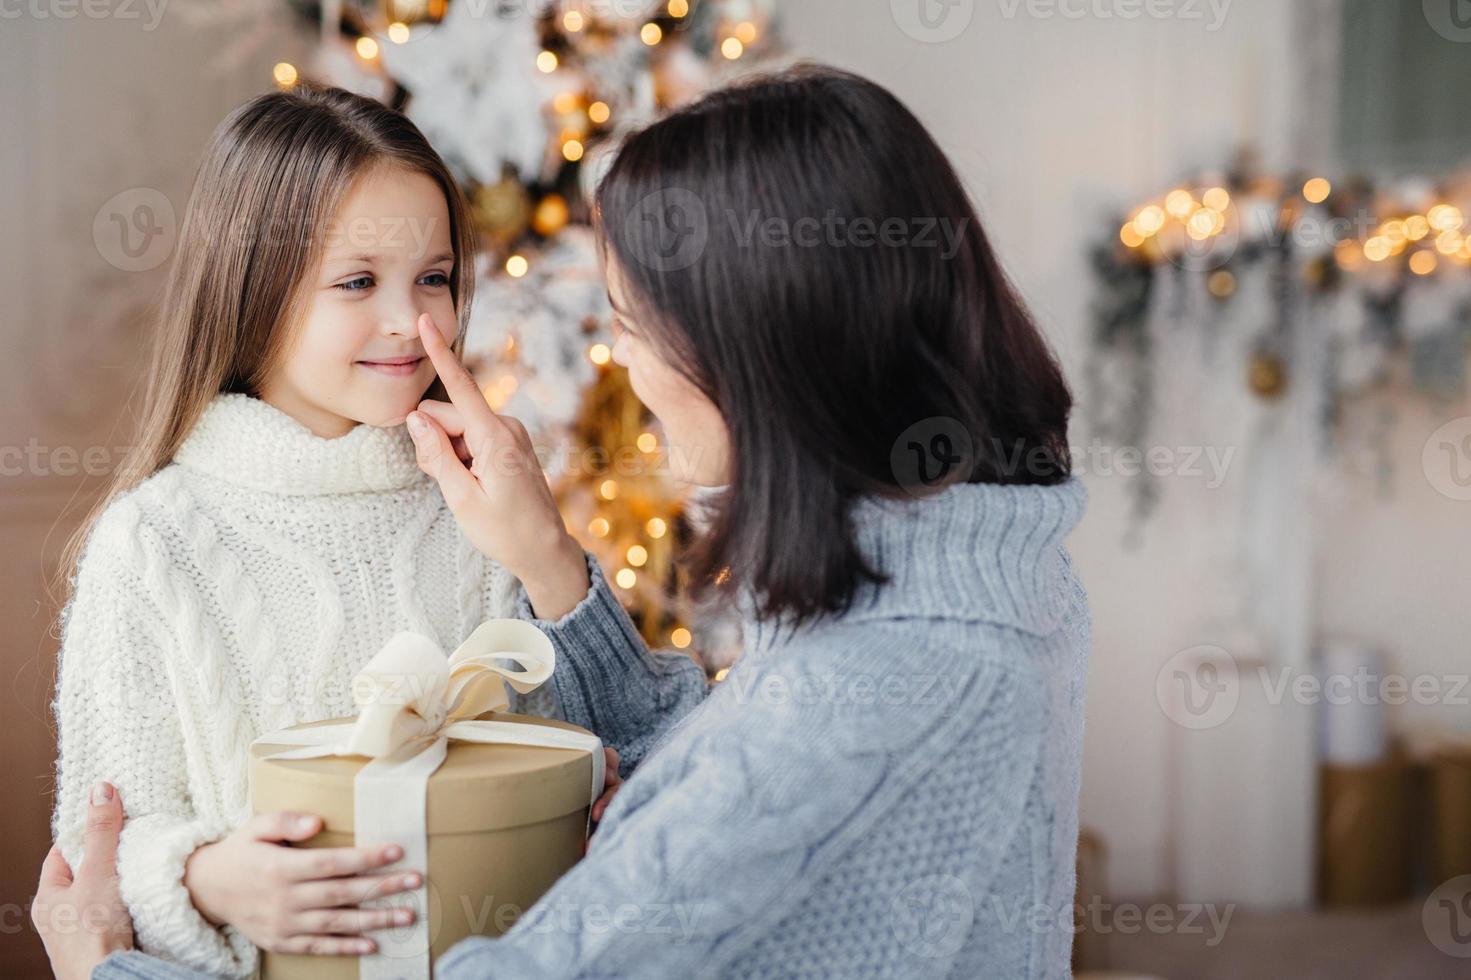 belle enfant de sexe féminin aux cheveux longs, porte un pull chaud blanc, regarde dans les yeux des mères, heureuse de recevoir un cadeau à noël, célèbre les vacances d'hiver dans le cercle familial. heureuse mère et fille photo